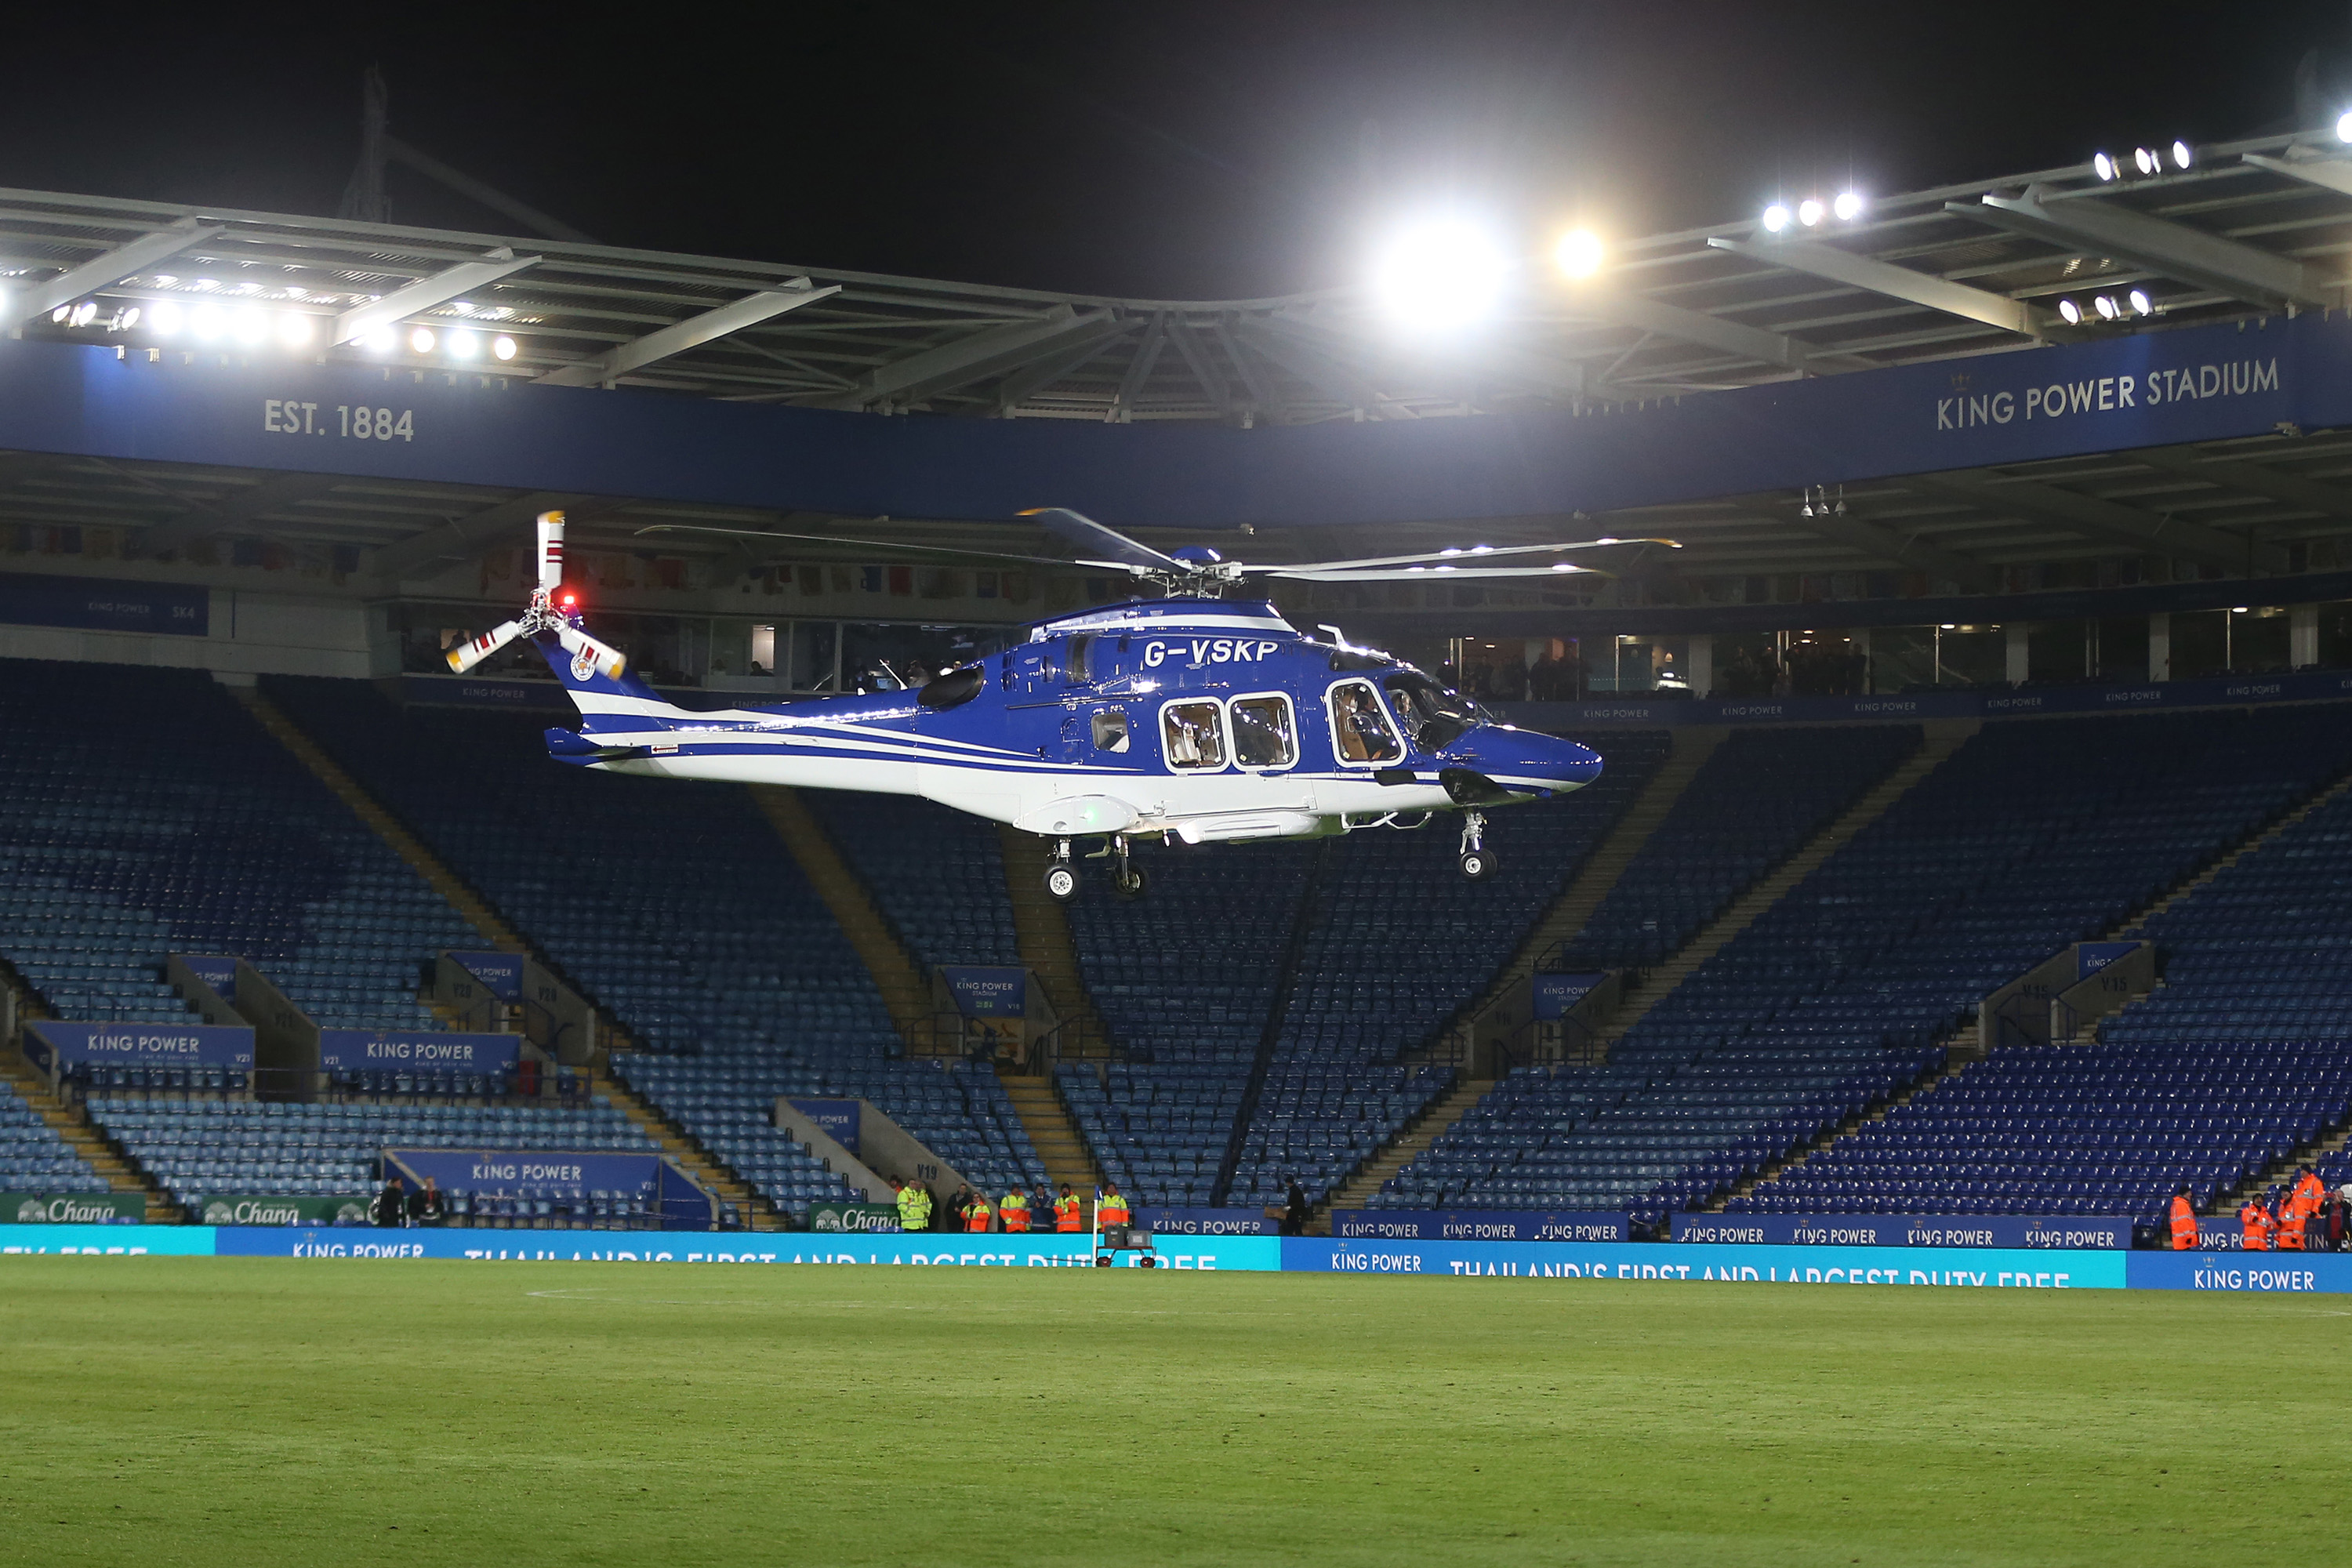 Falha mecânica provocou queda de helicóptero que matou dono do Leicester